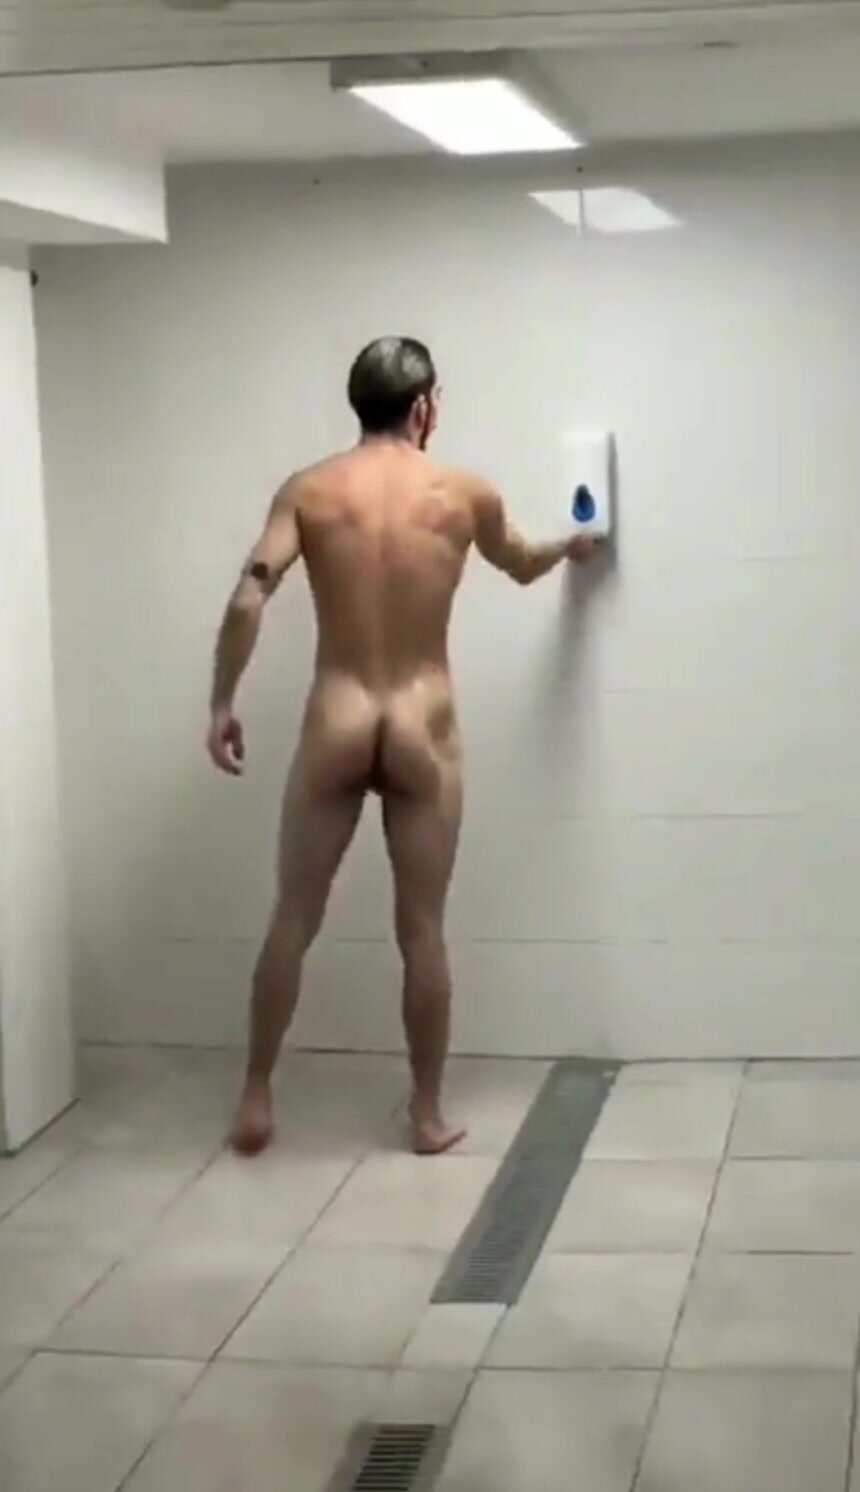 Spy shower boner